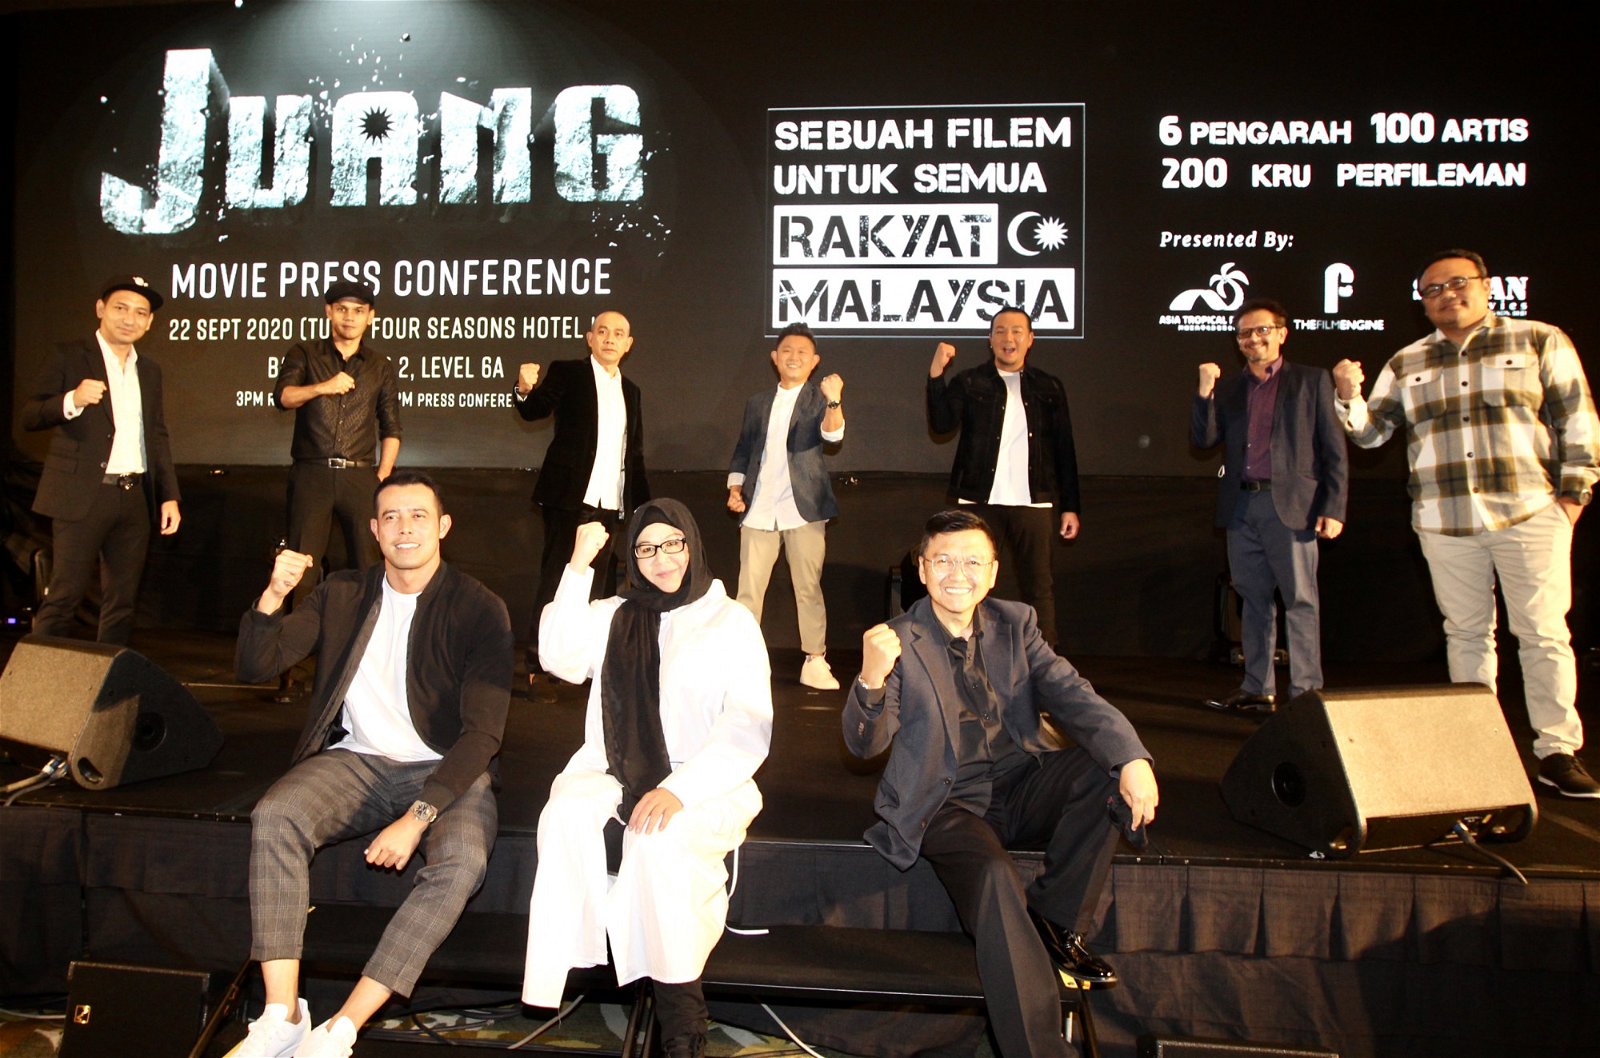 《JUANG》导演、监制和演员们为电影进行推介。站者左起为兹山拉萨、尤斯里阿都哈林、罗山诺、赖健雄、林德荣、 卡比尔巴迪亚和奥斯曼阿里；坐者为祖阿里芬、尔玛法蒂玛和阿兹奥斯曼。